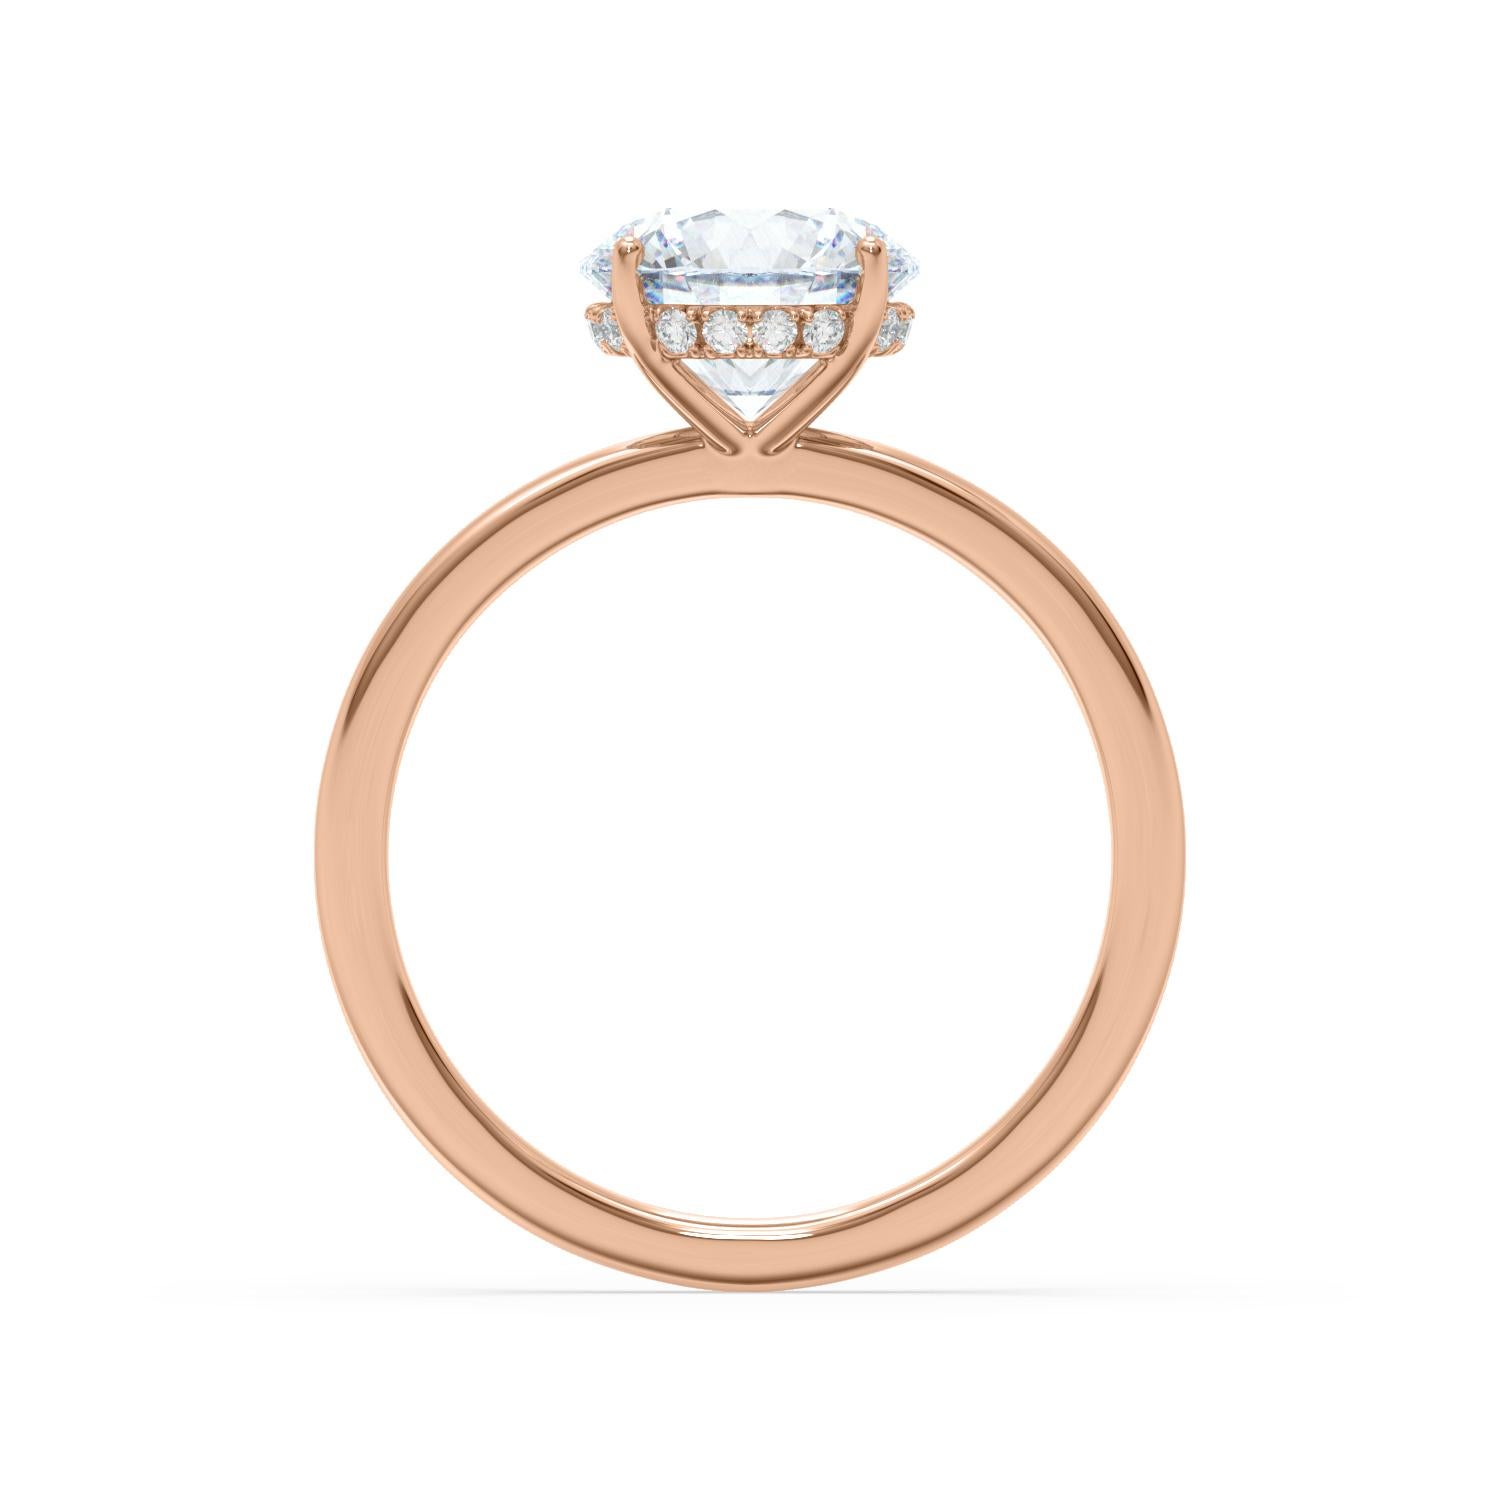 p&v engagement ring price